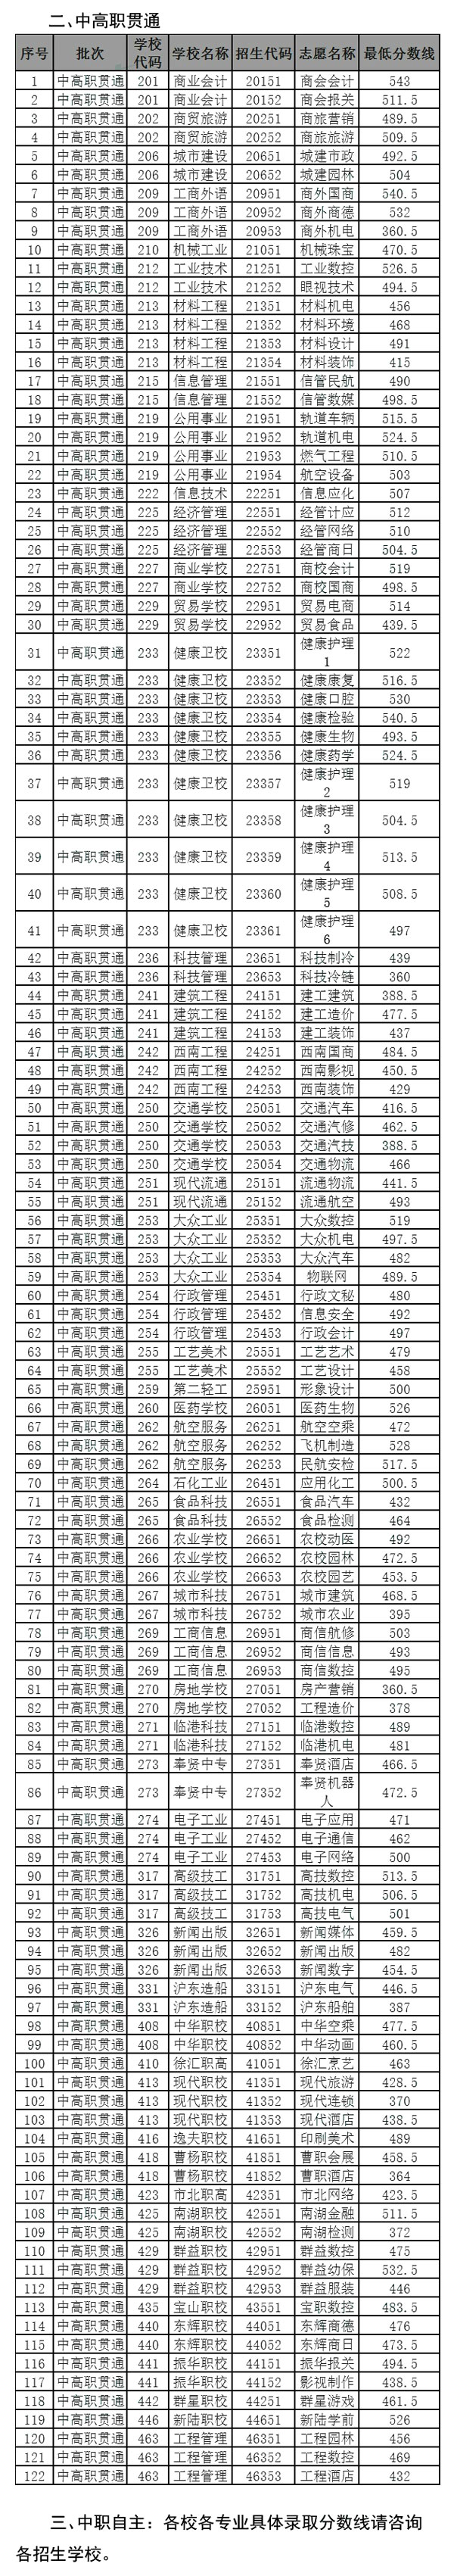 2016年上海中职提前批录取分数线出炉2